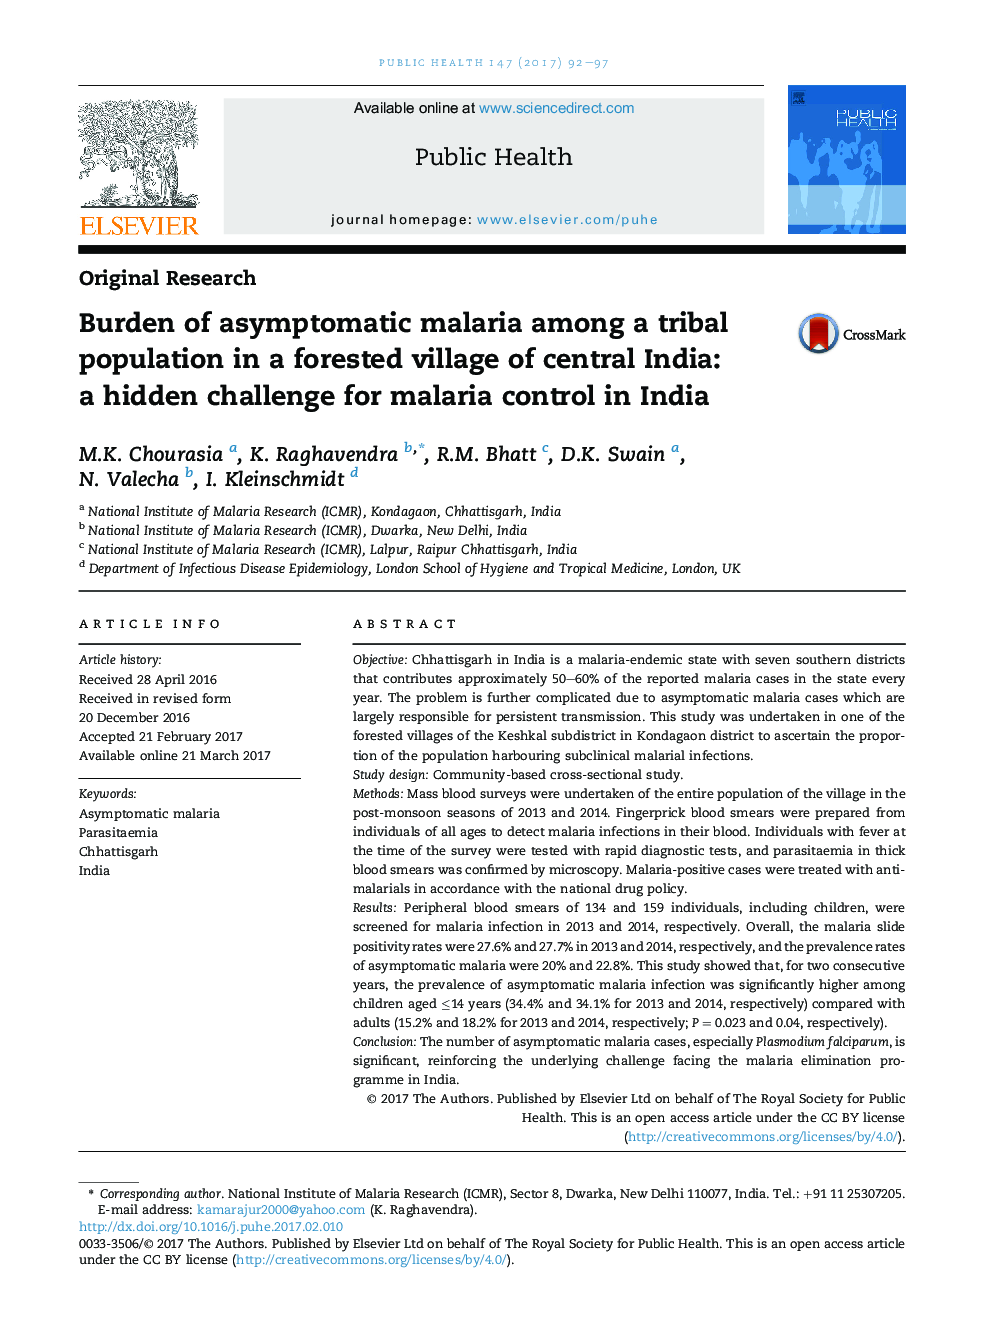 بار مالاریای بدون علامت در میان جمعیت قبیله ای در یک روستای جنگل مرکزی هند: یک چالش پنهانی برای کنترل مالاریا در هند 